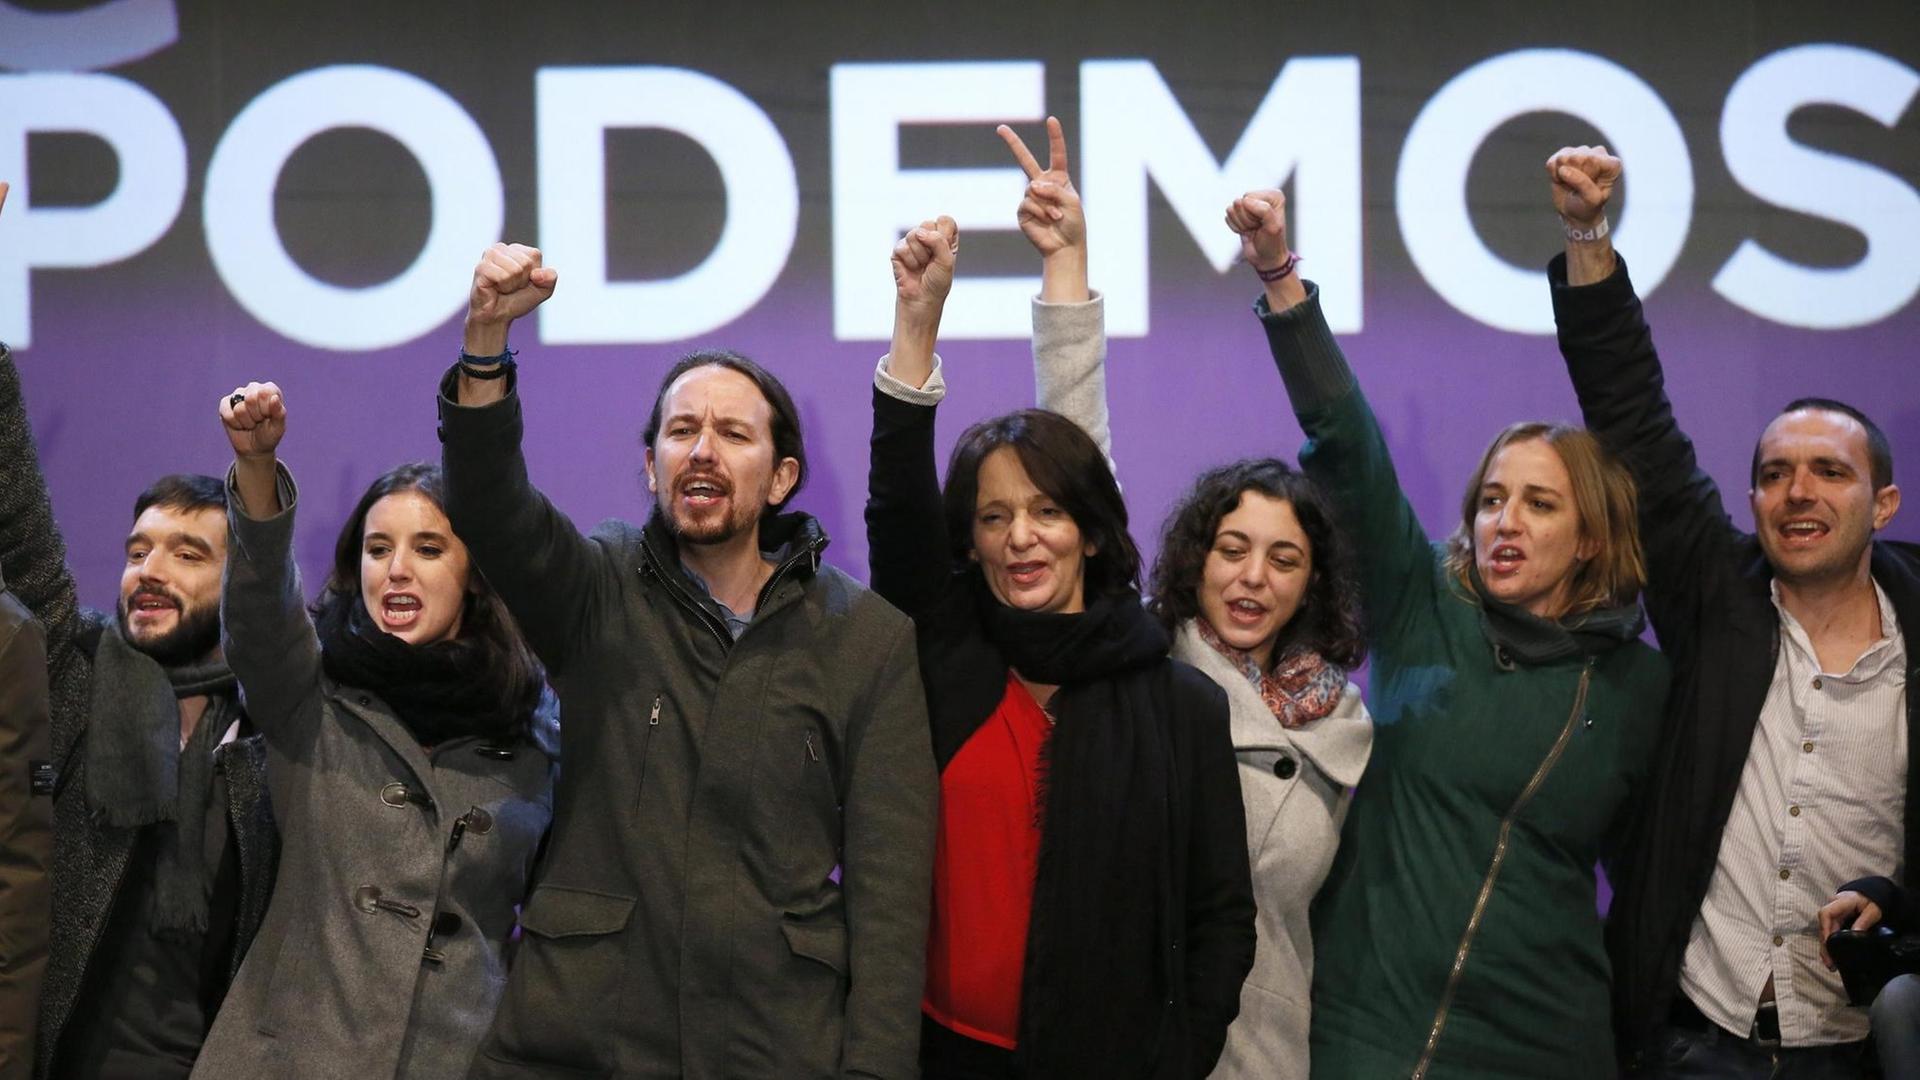 MItglieder der spanischen Partei "Podemos" und ihr Chef Pablo Iglesias